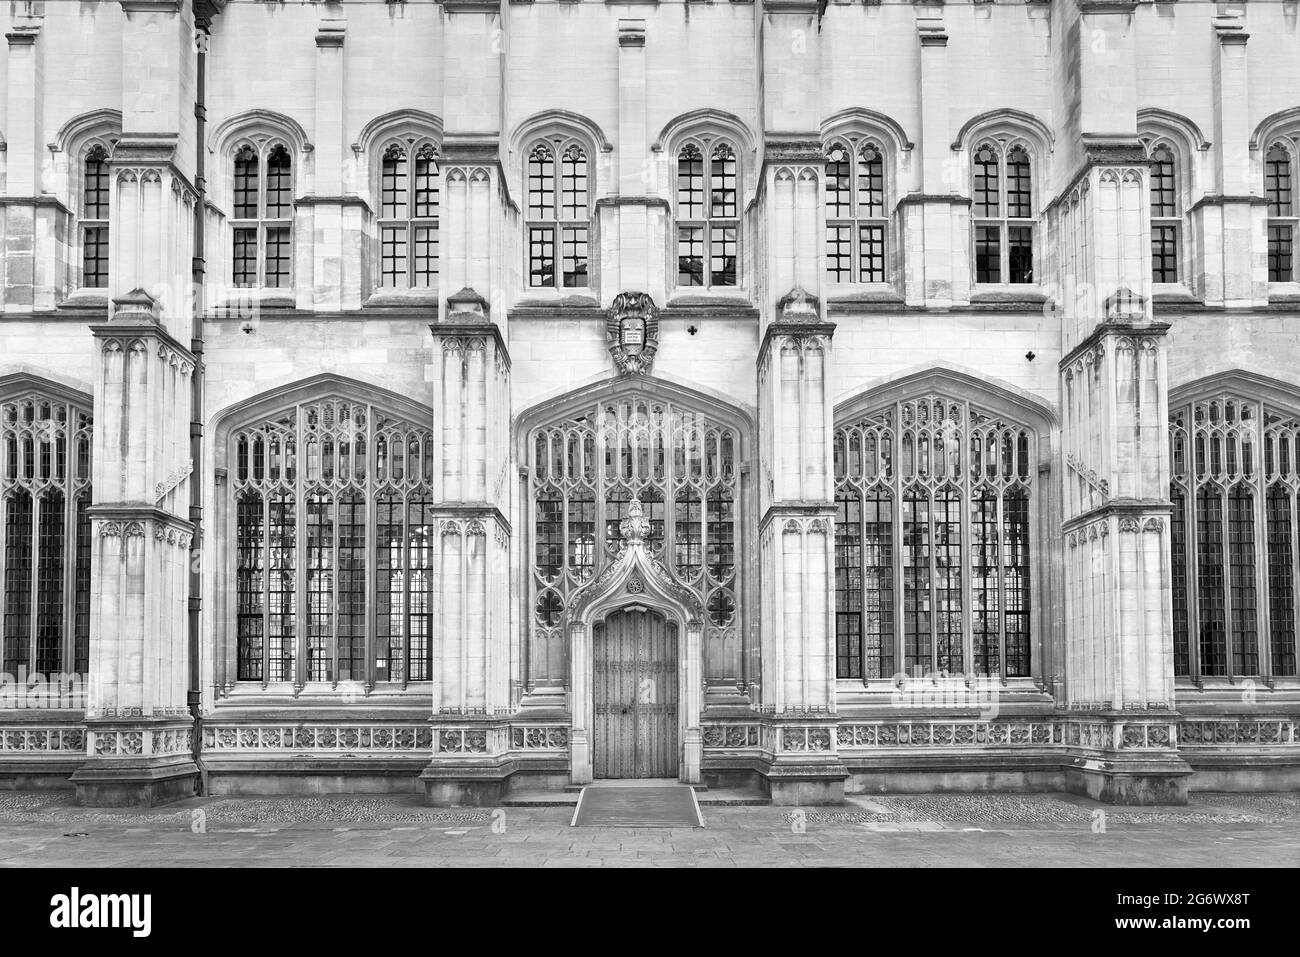 La sección de la escuela de Divinidad de la biblioteca Bodleian, universidad de Oxford, Inglaterra. Foto de stock